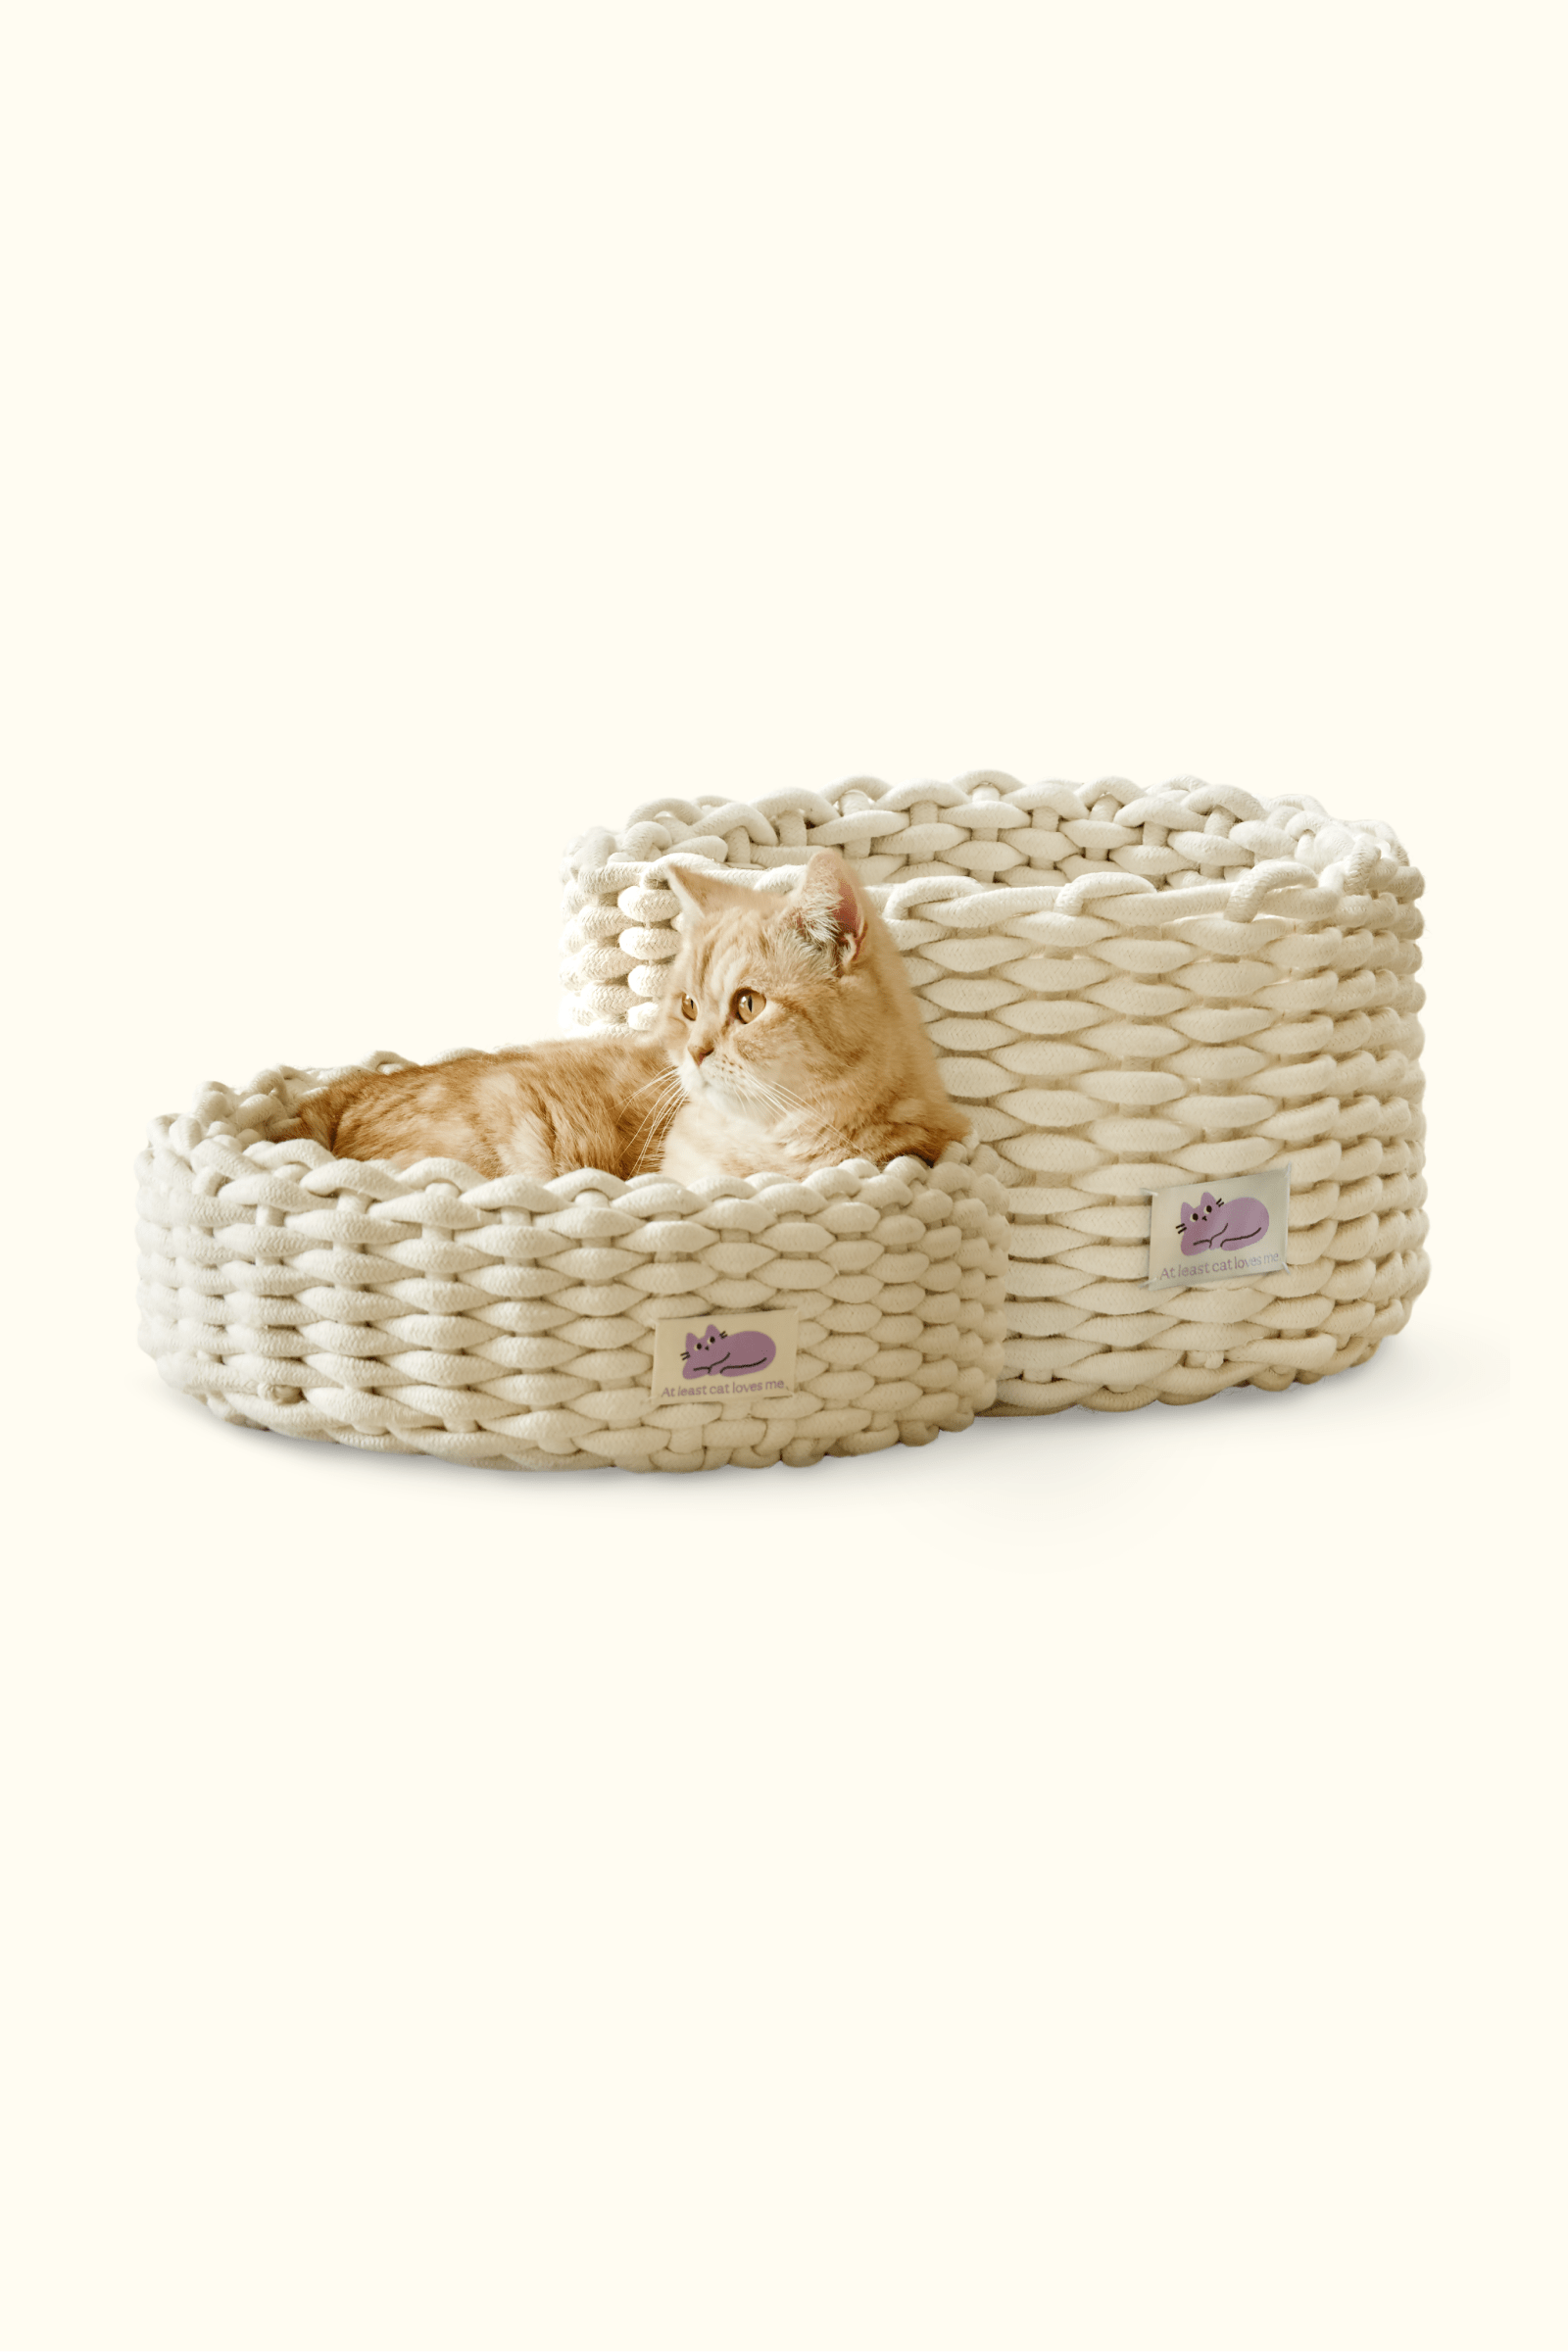 [아이보리 재입고] Cat knit basket